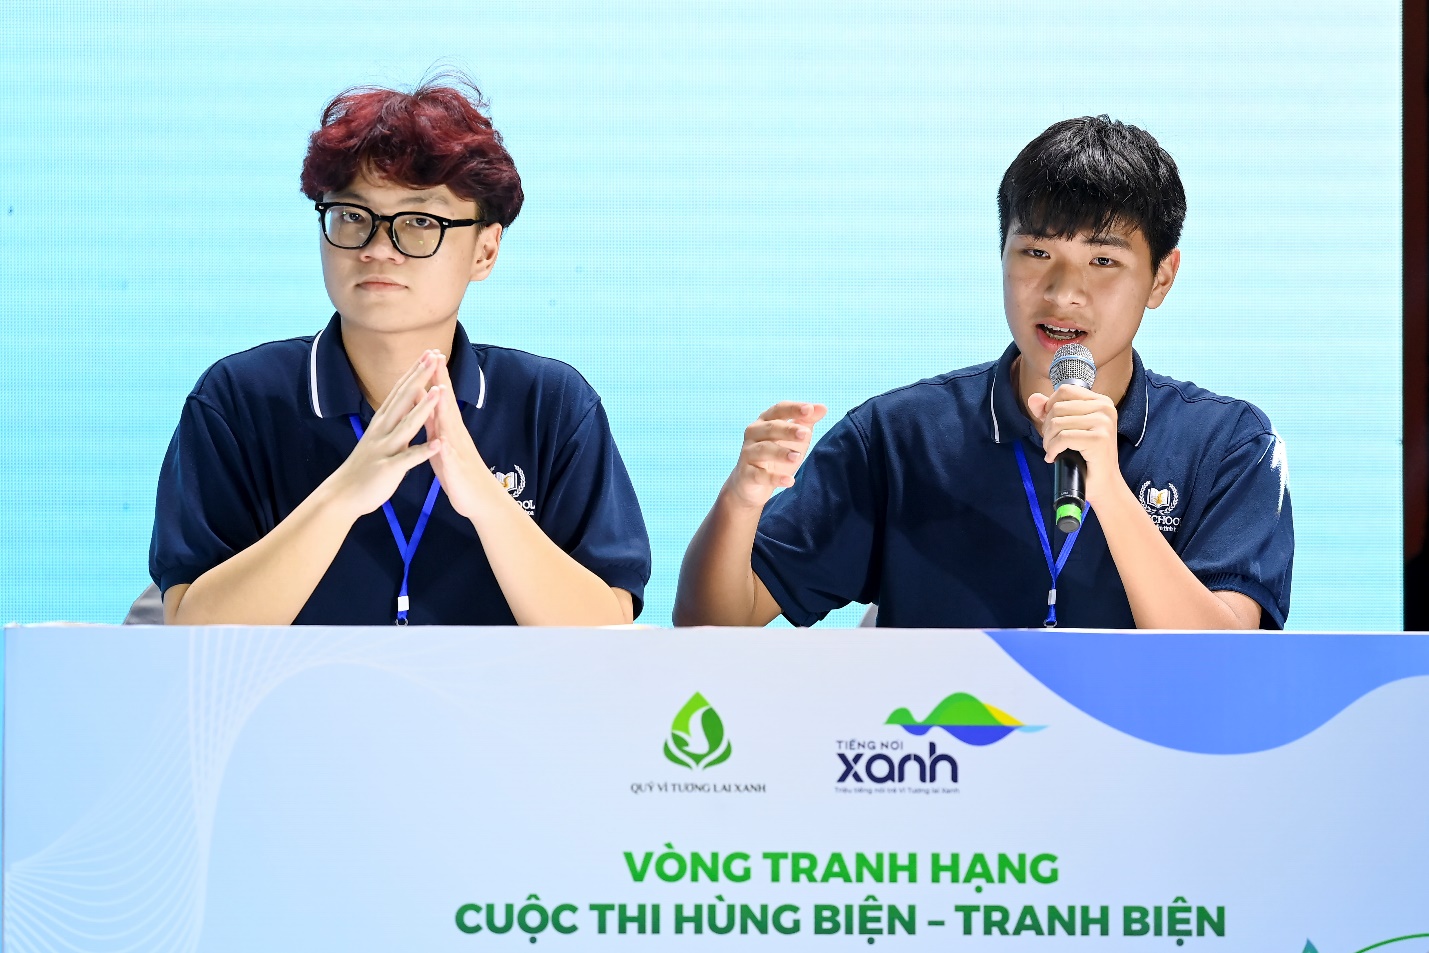 Cuộc thi Tiếng nói Xanh - Gieo nhận thức xanh, lối sống xanh cho giới trẻ - Ảnh 1.